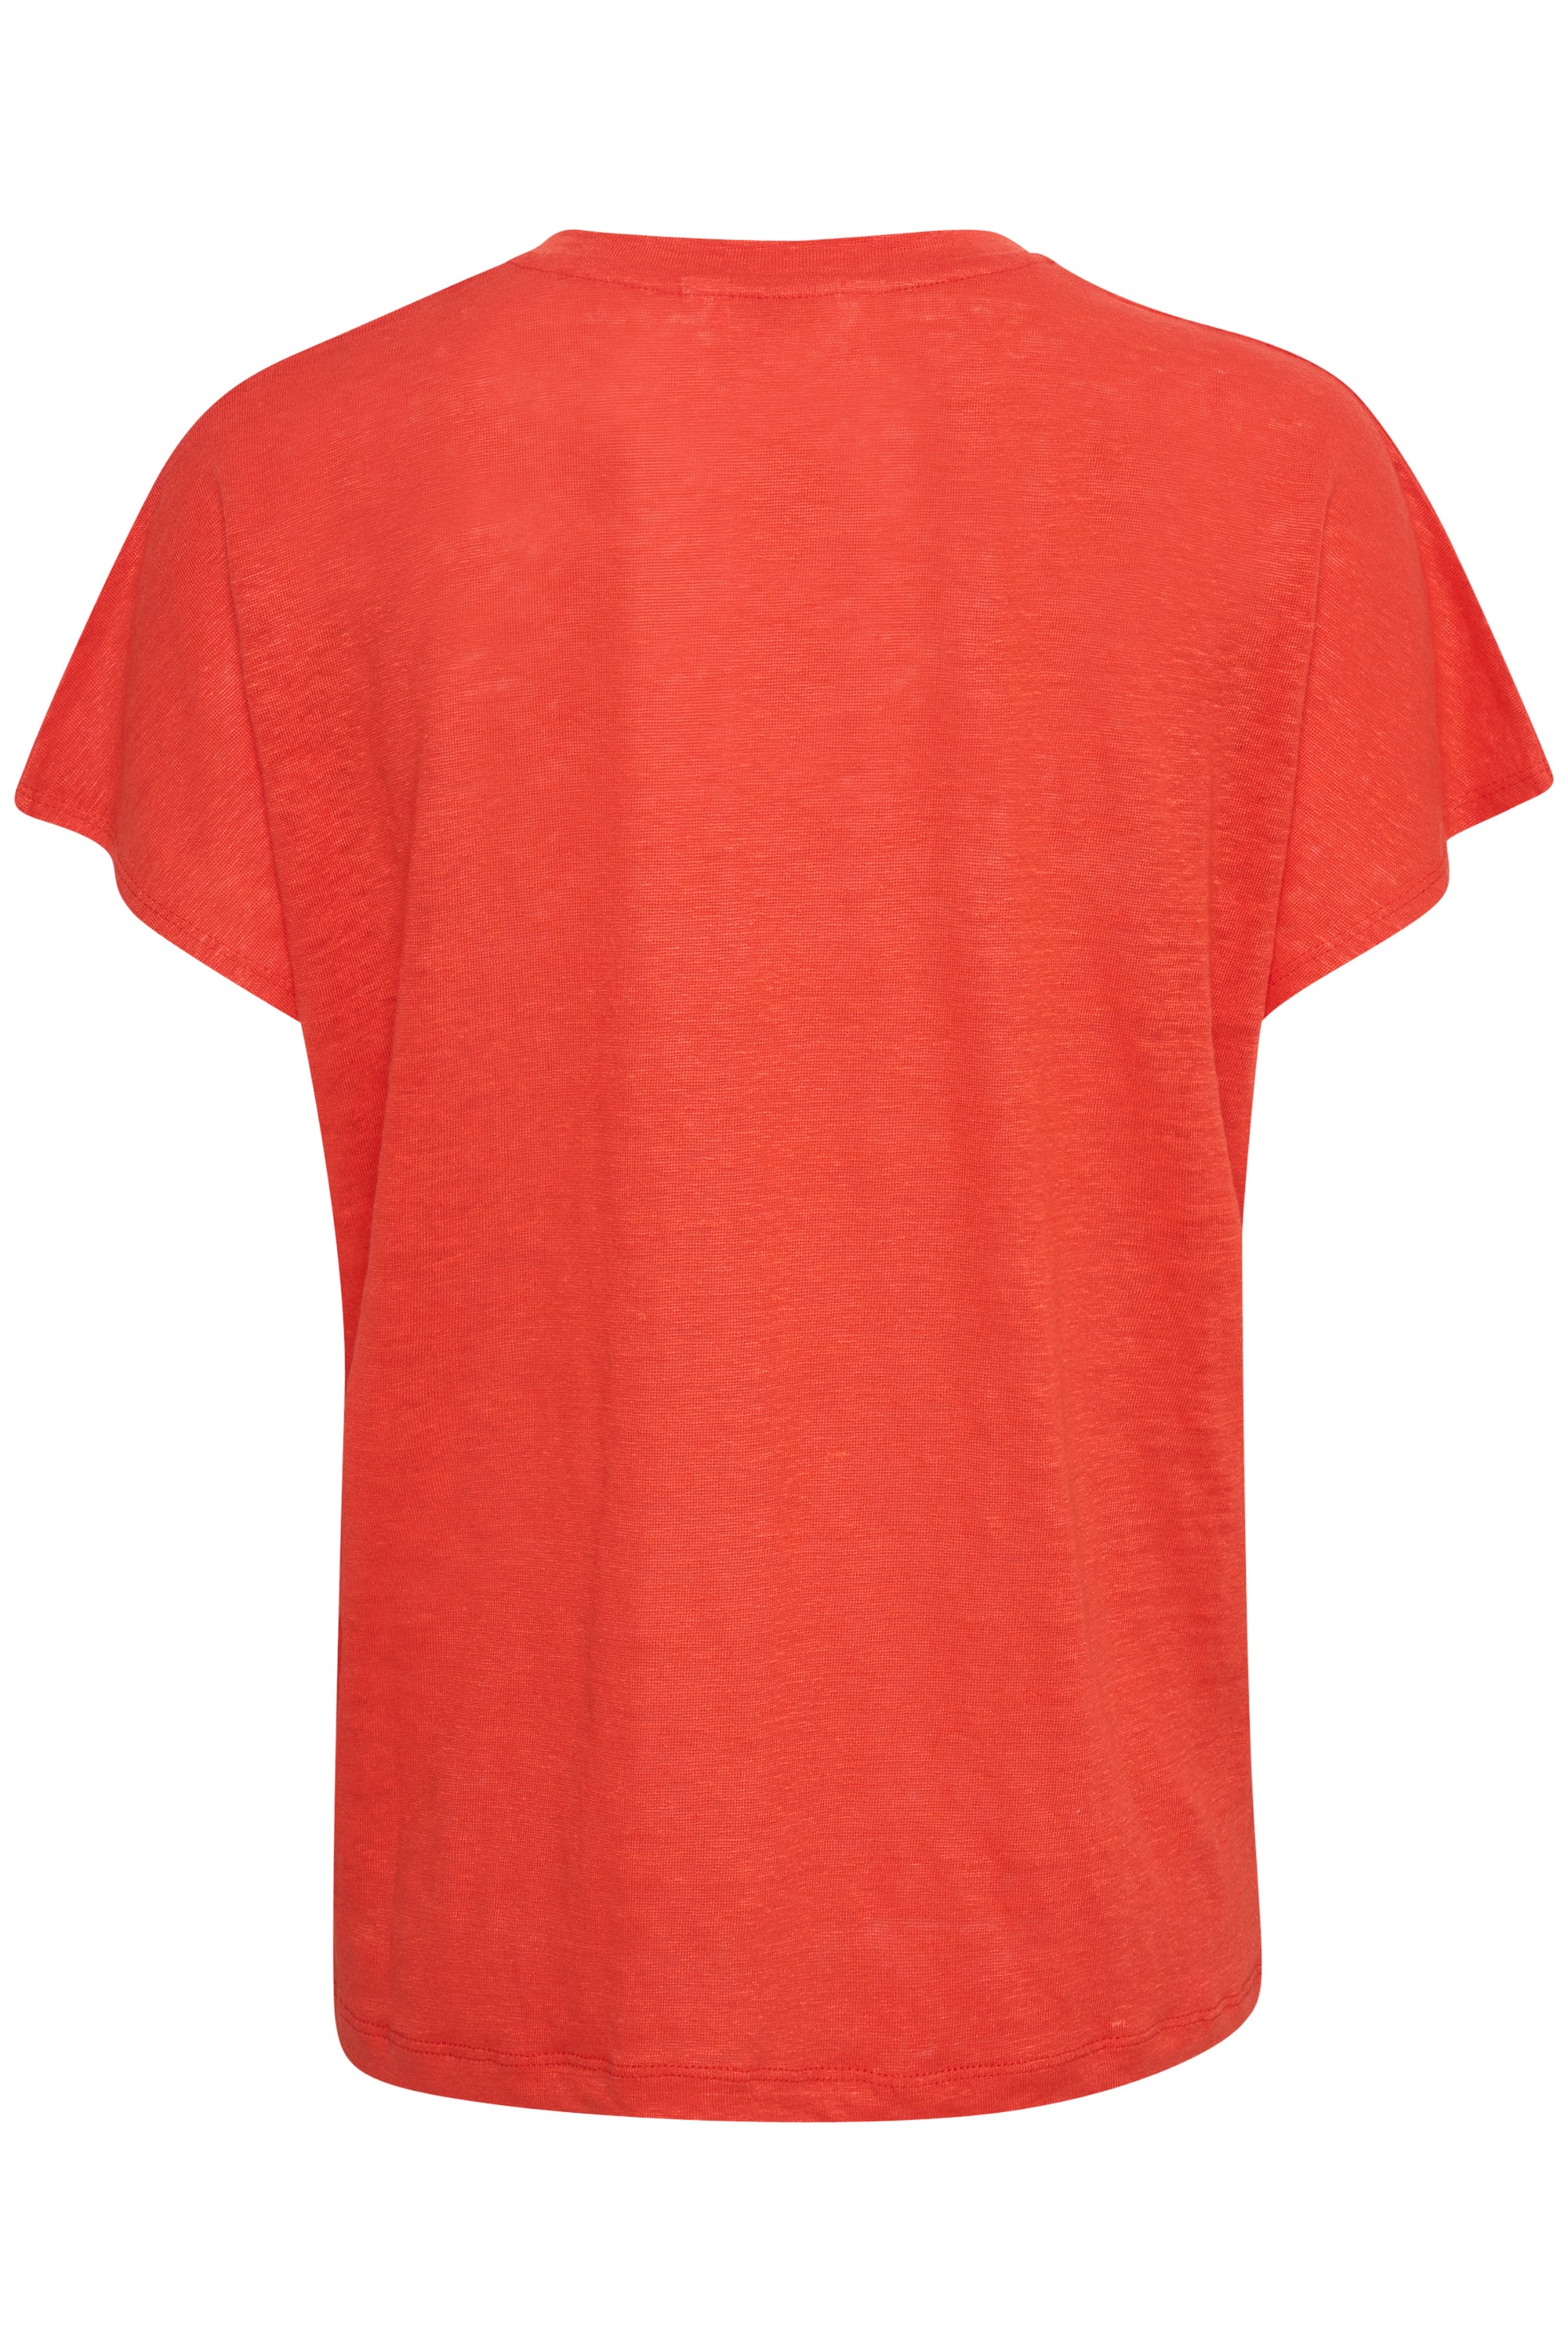 Axeline T-Shirt - Couleur